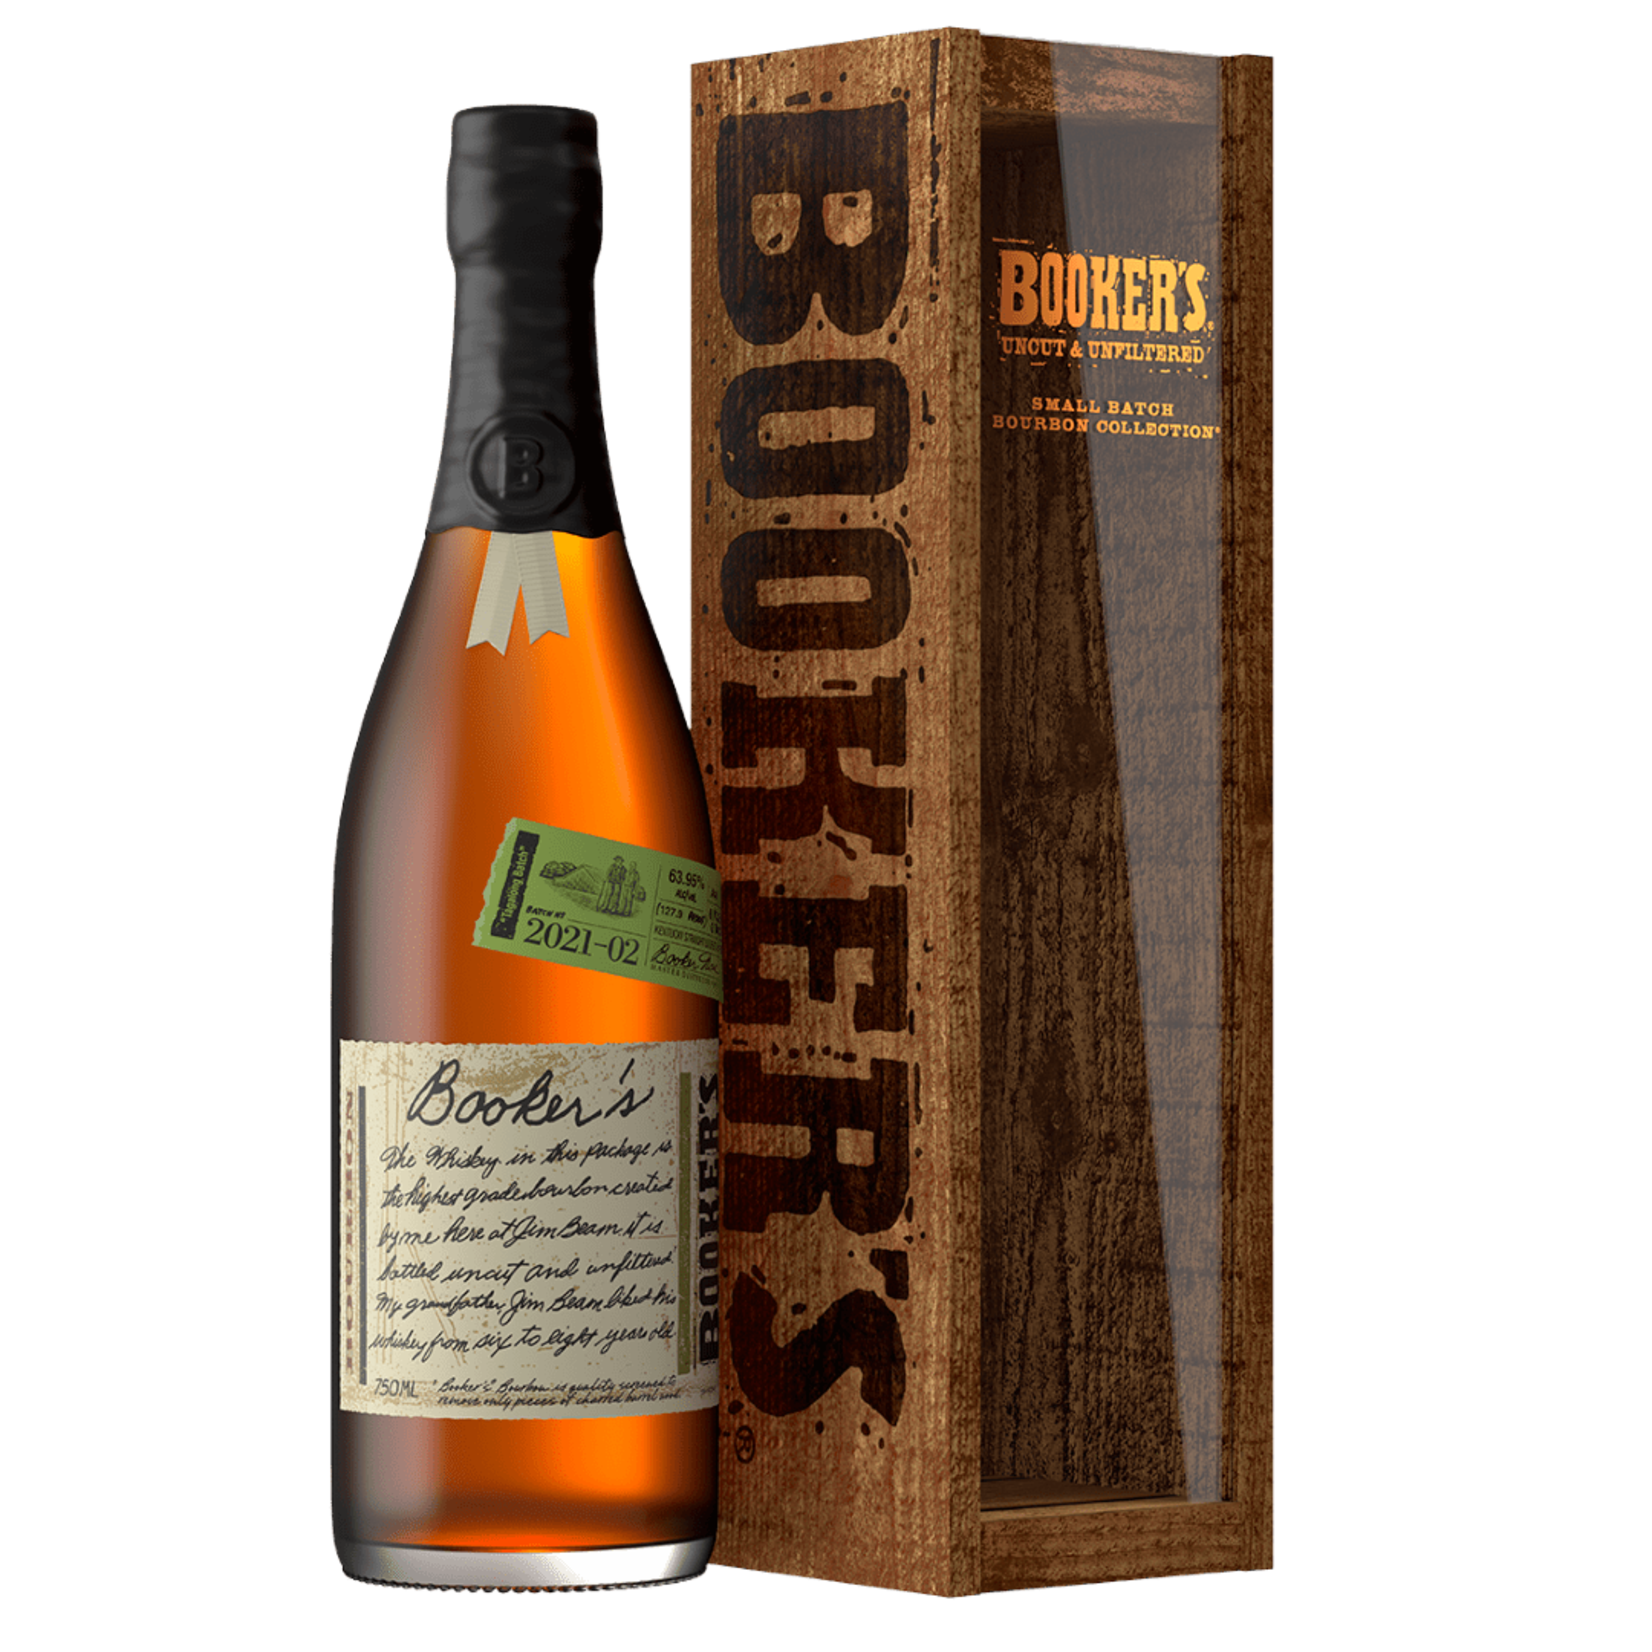 Spirits Booker's Uncut & Unfiltered Small Batch Bourbon Tagalong Batch  2021-02 Release